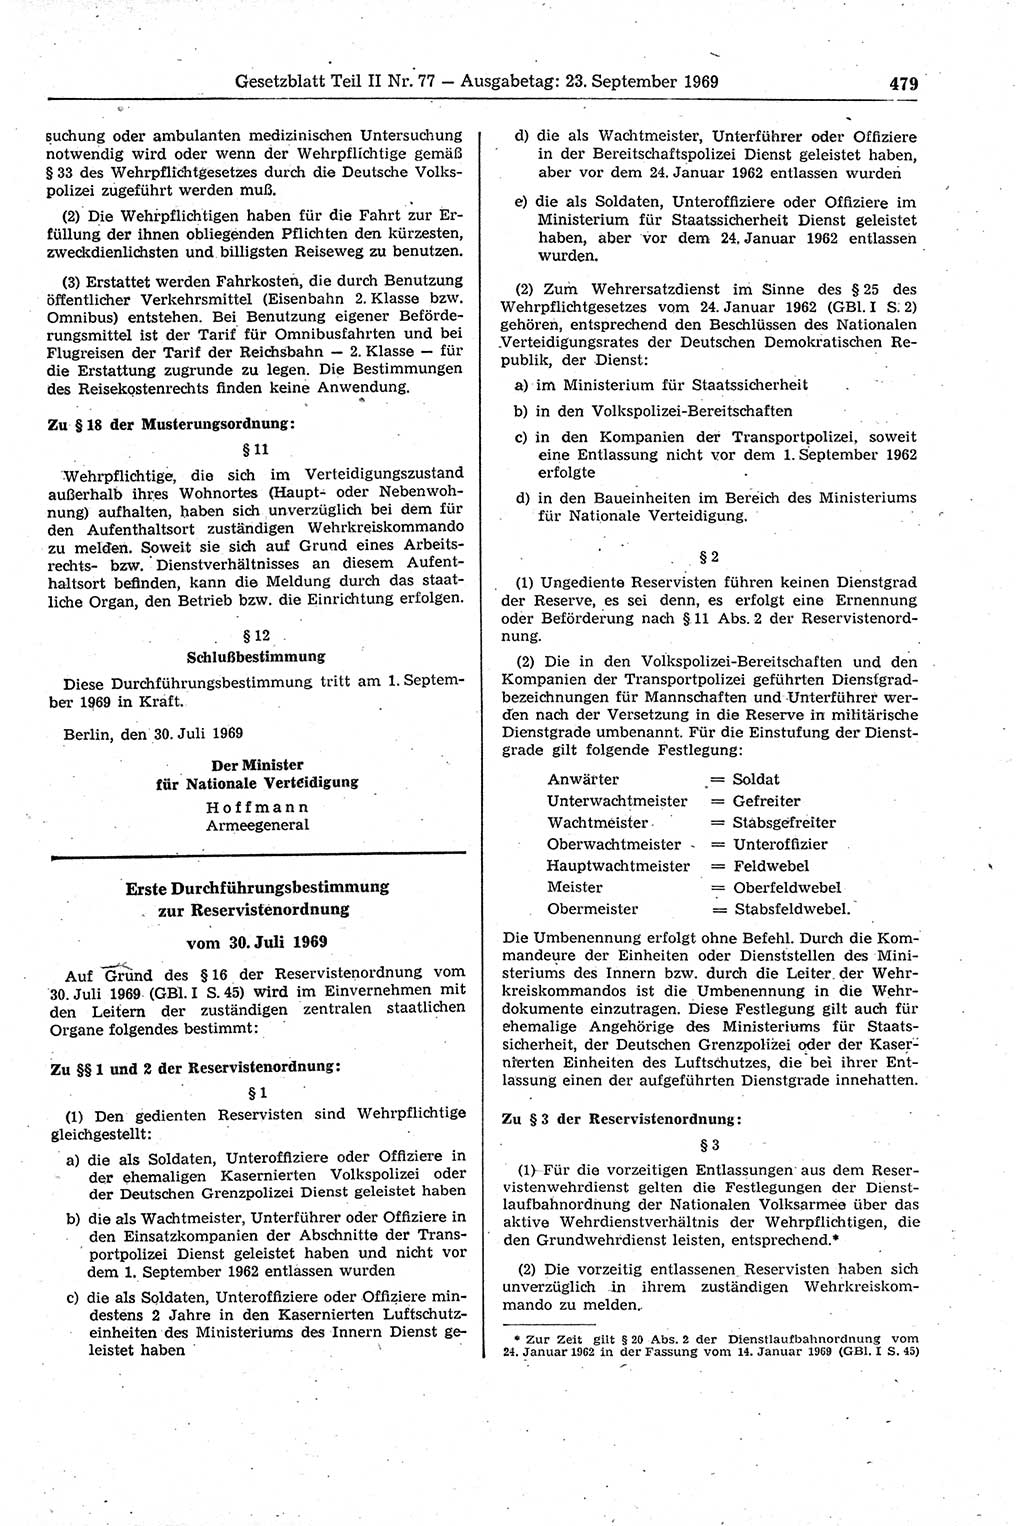 Gesetzblatt (GBl.) der Deutschen Demokratischen Republik (DDR) Teil ⅠⅠ 1969, Seite 479 (GBl. DDR ⅠⅠ 1969, S. 479)